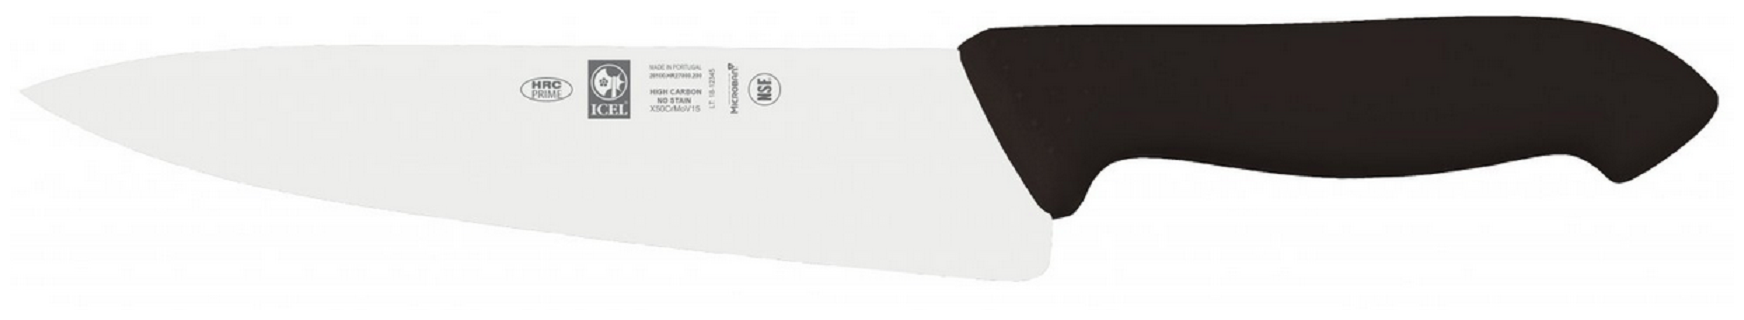 Нож ICEL поварской (шеф-нож) узкое лезвие 20 см, ручка с антибактериальной защитой Microban